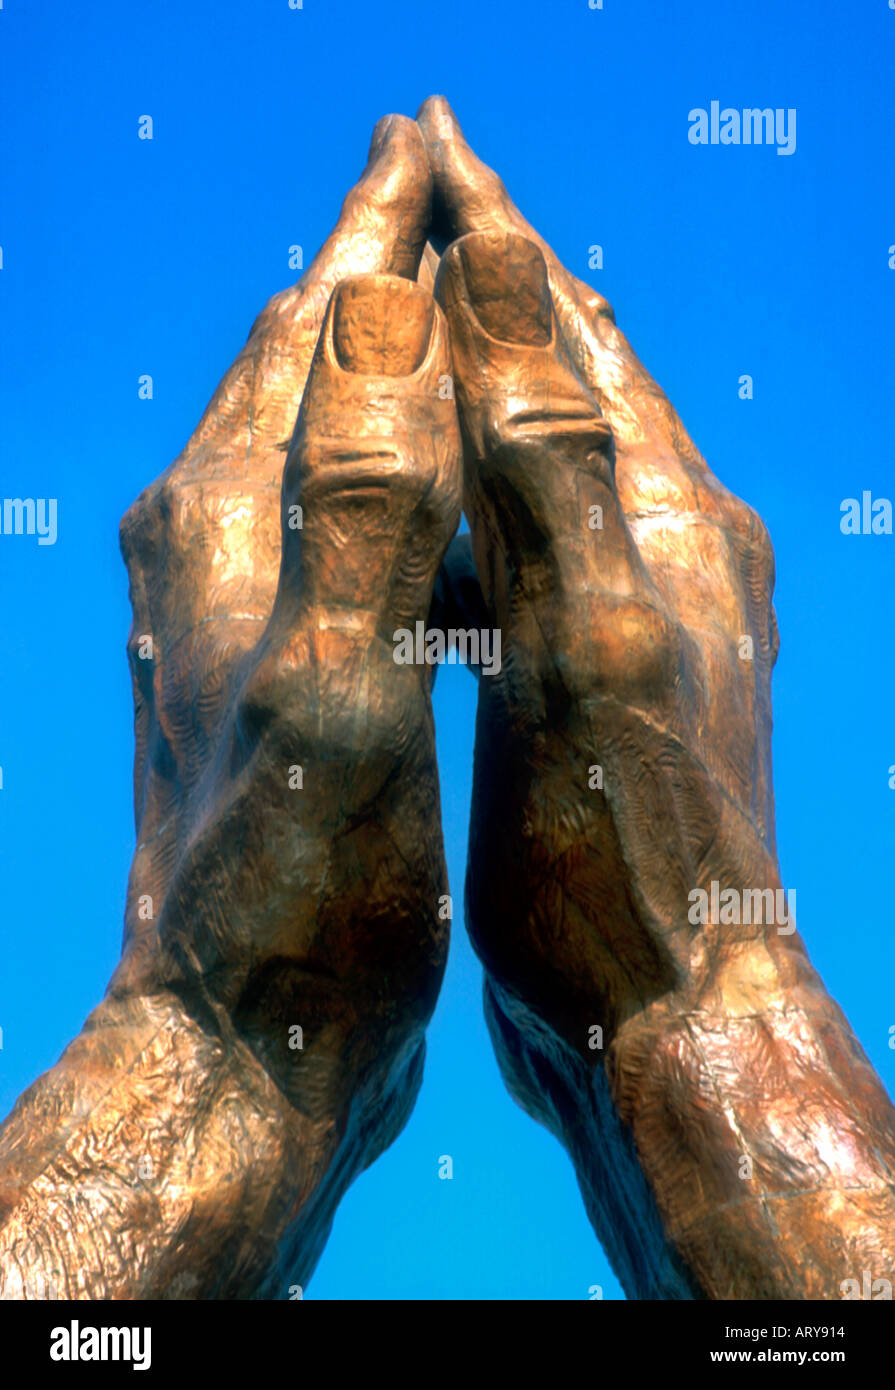 Riesige Hände betend bronze Statue Oral Roberts Universität in Tulsa Oklahoma Stockfoto